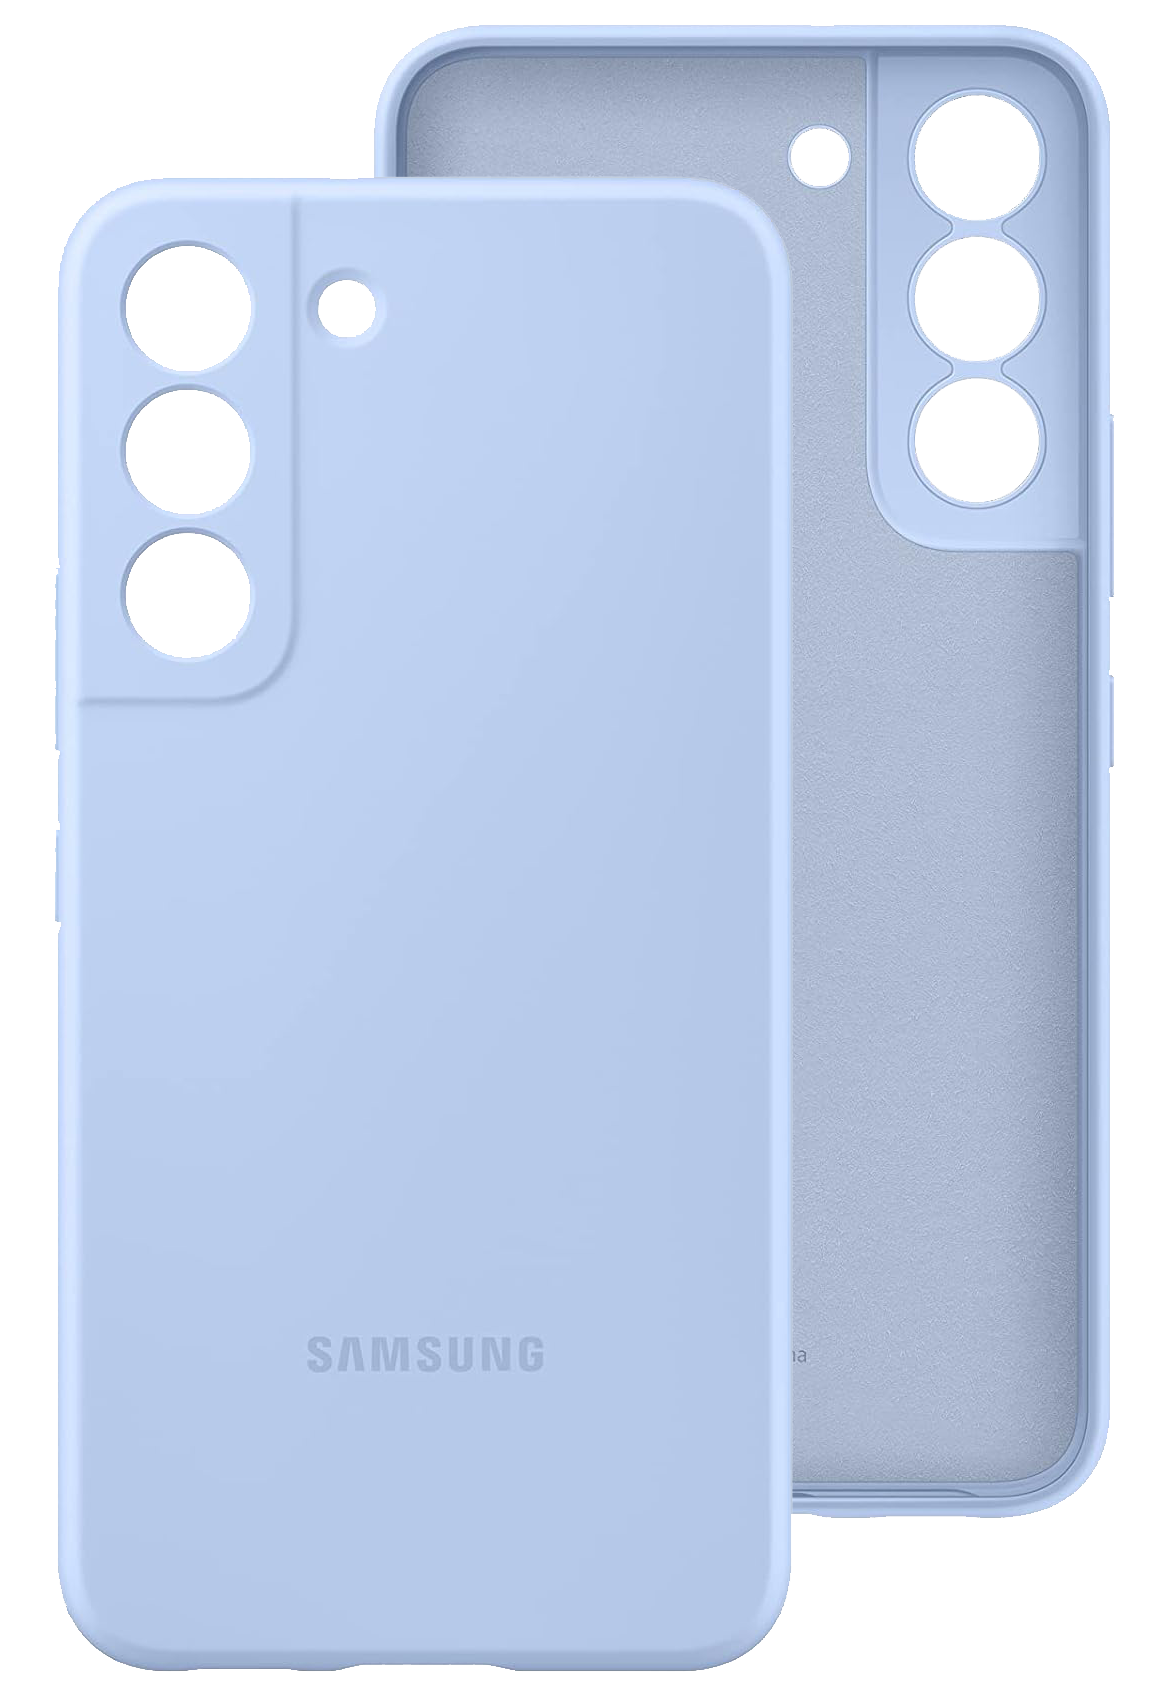 Samsung Silicone Cover (Galaxy S22) blau - Ohne Vertrag